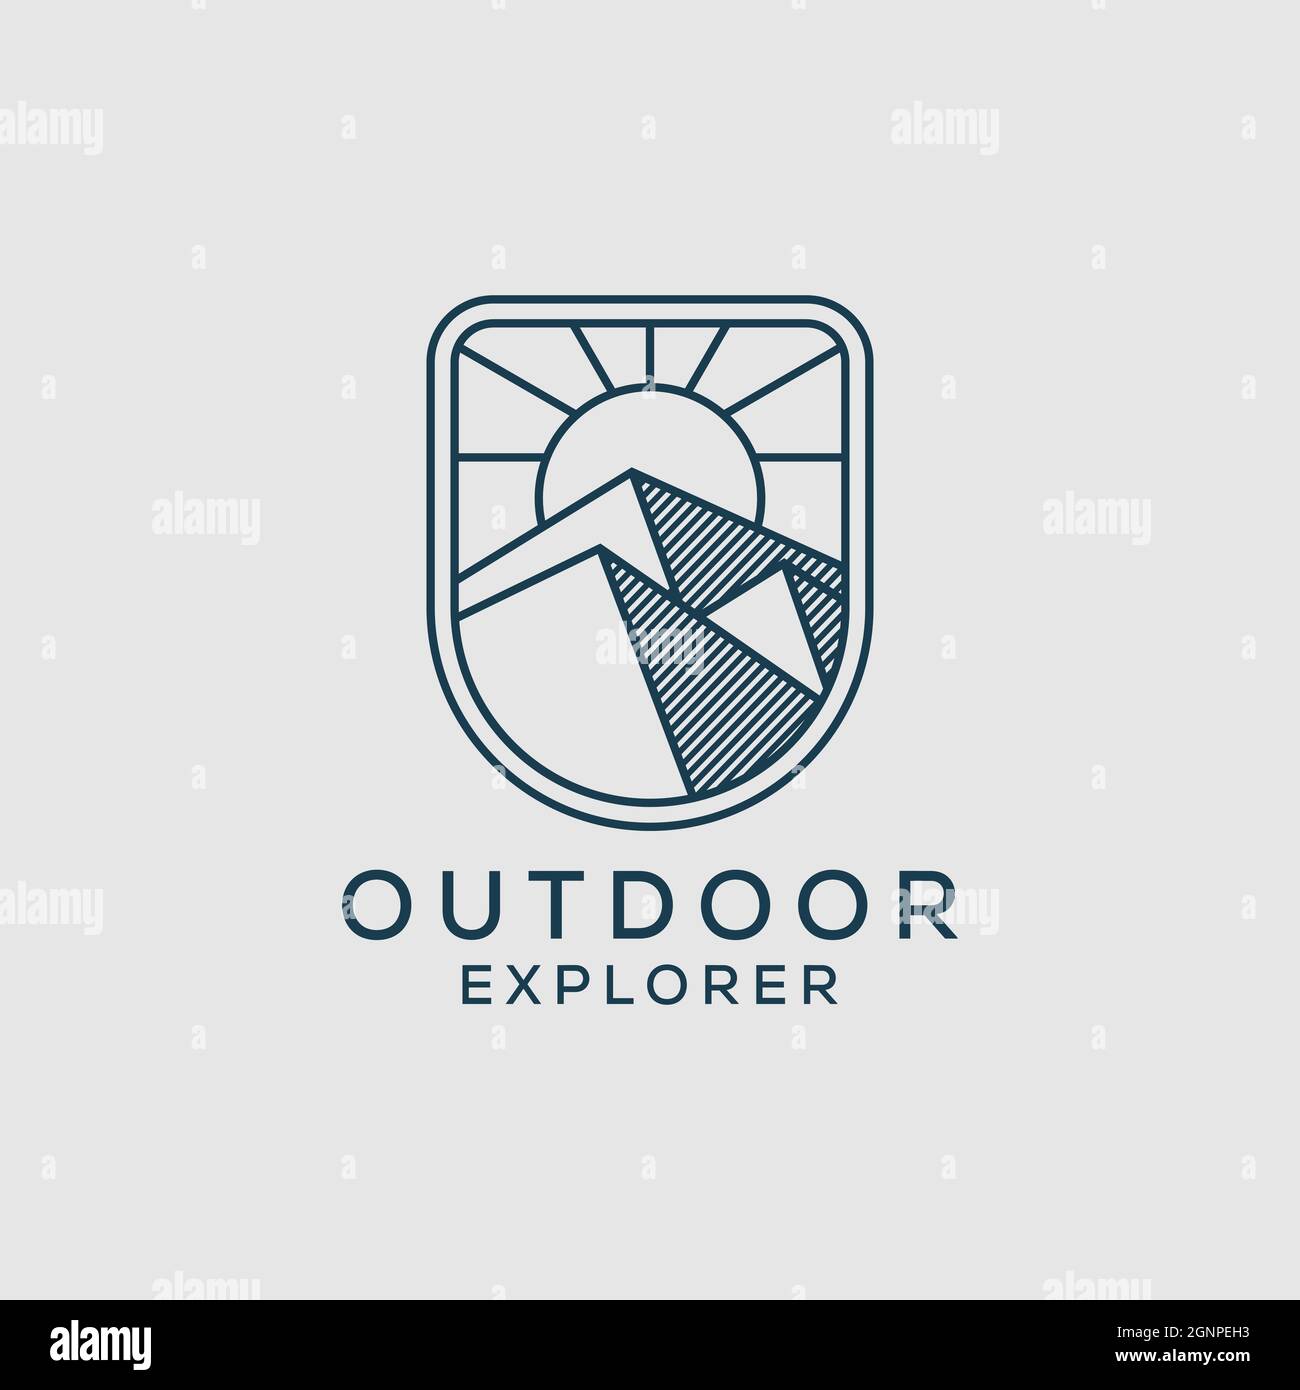 line art outdoor explorer logo design, Vector graphic for outdoor mountain sign symbol. Stock Vector